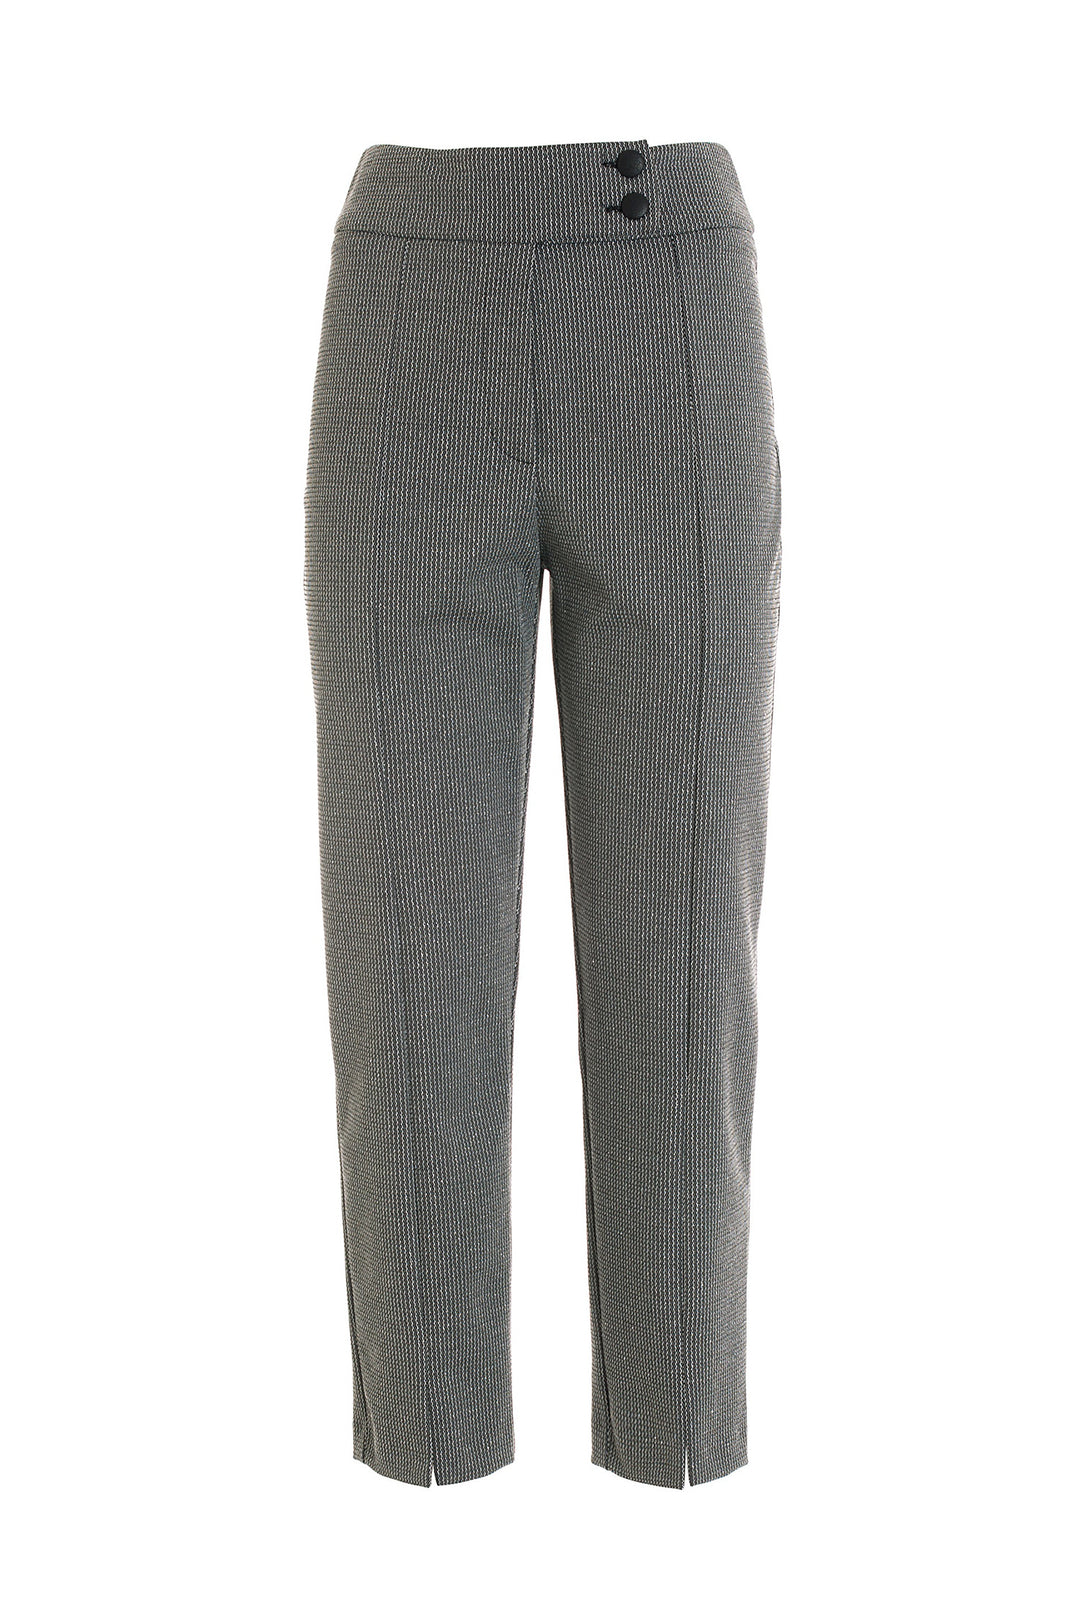 FRACOMINA Pantalone carrot argento-nero in tweed - Mancinelli 1954